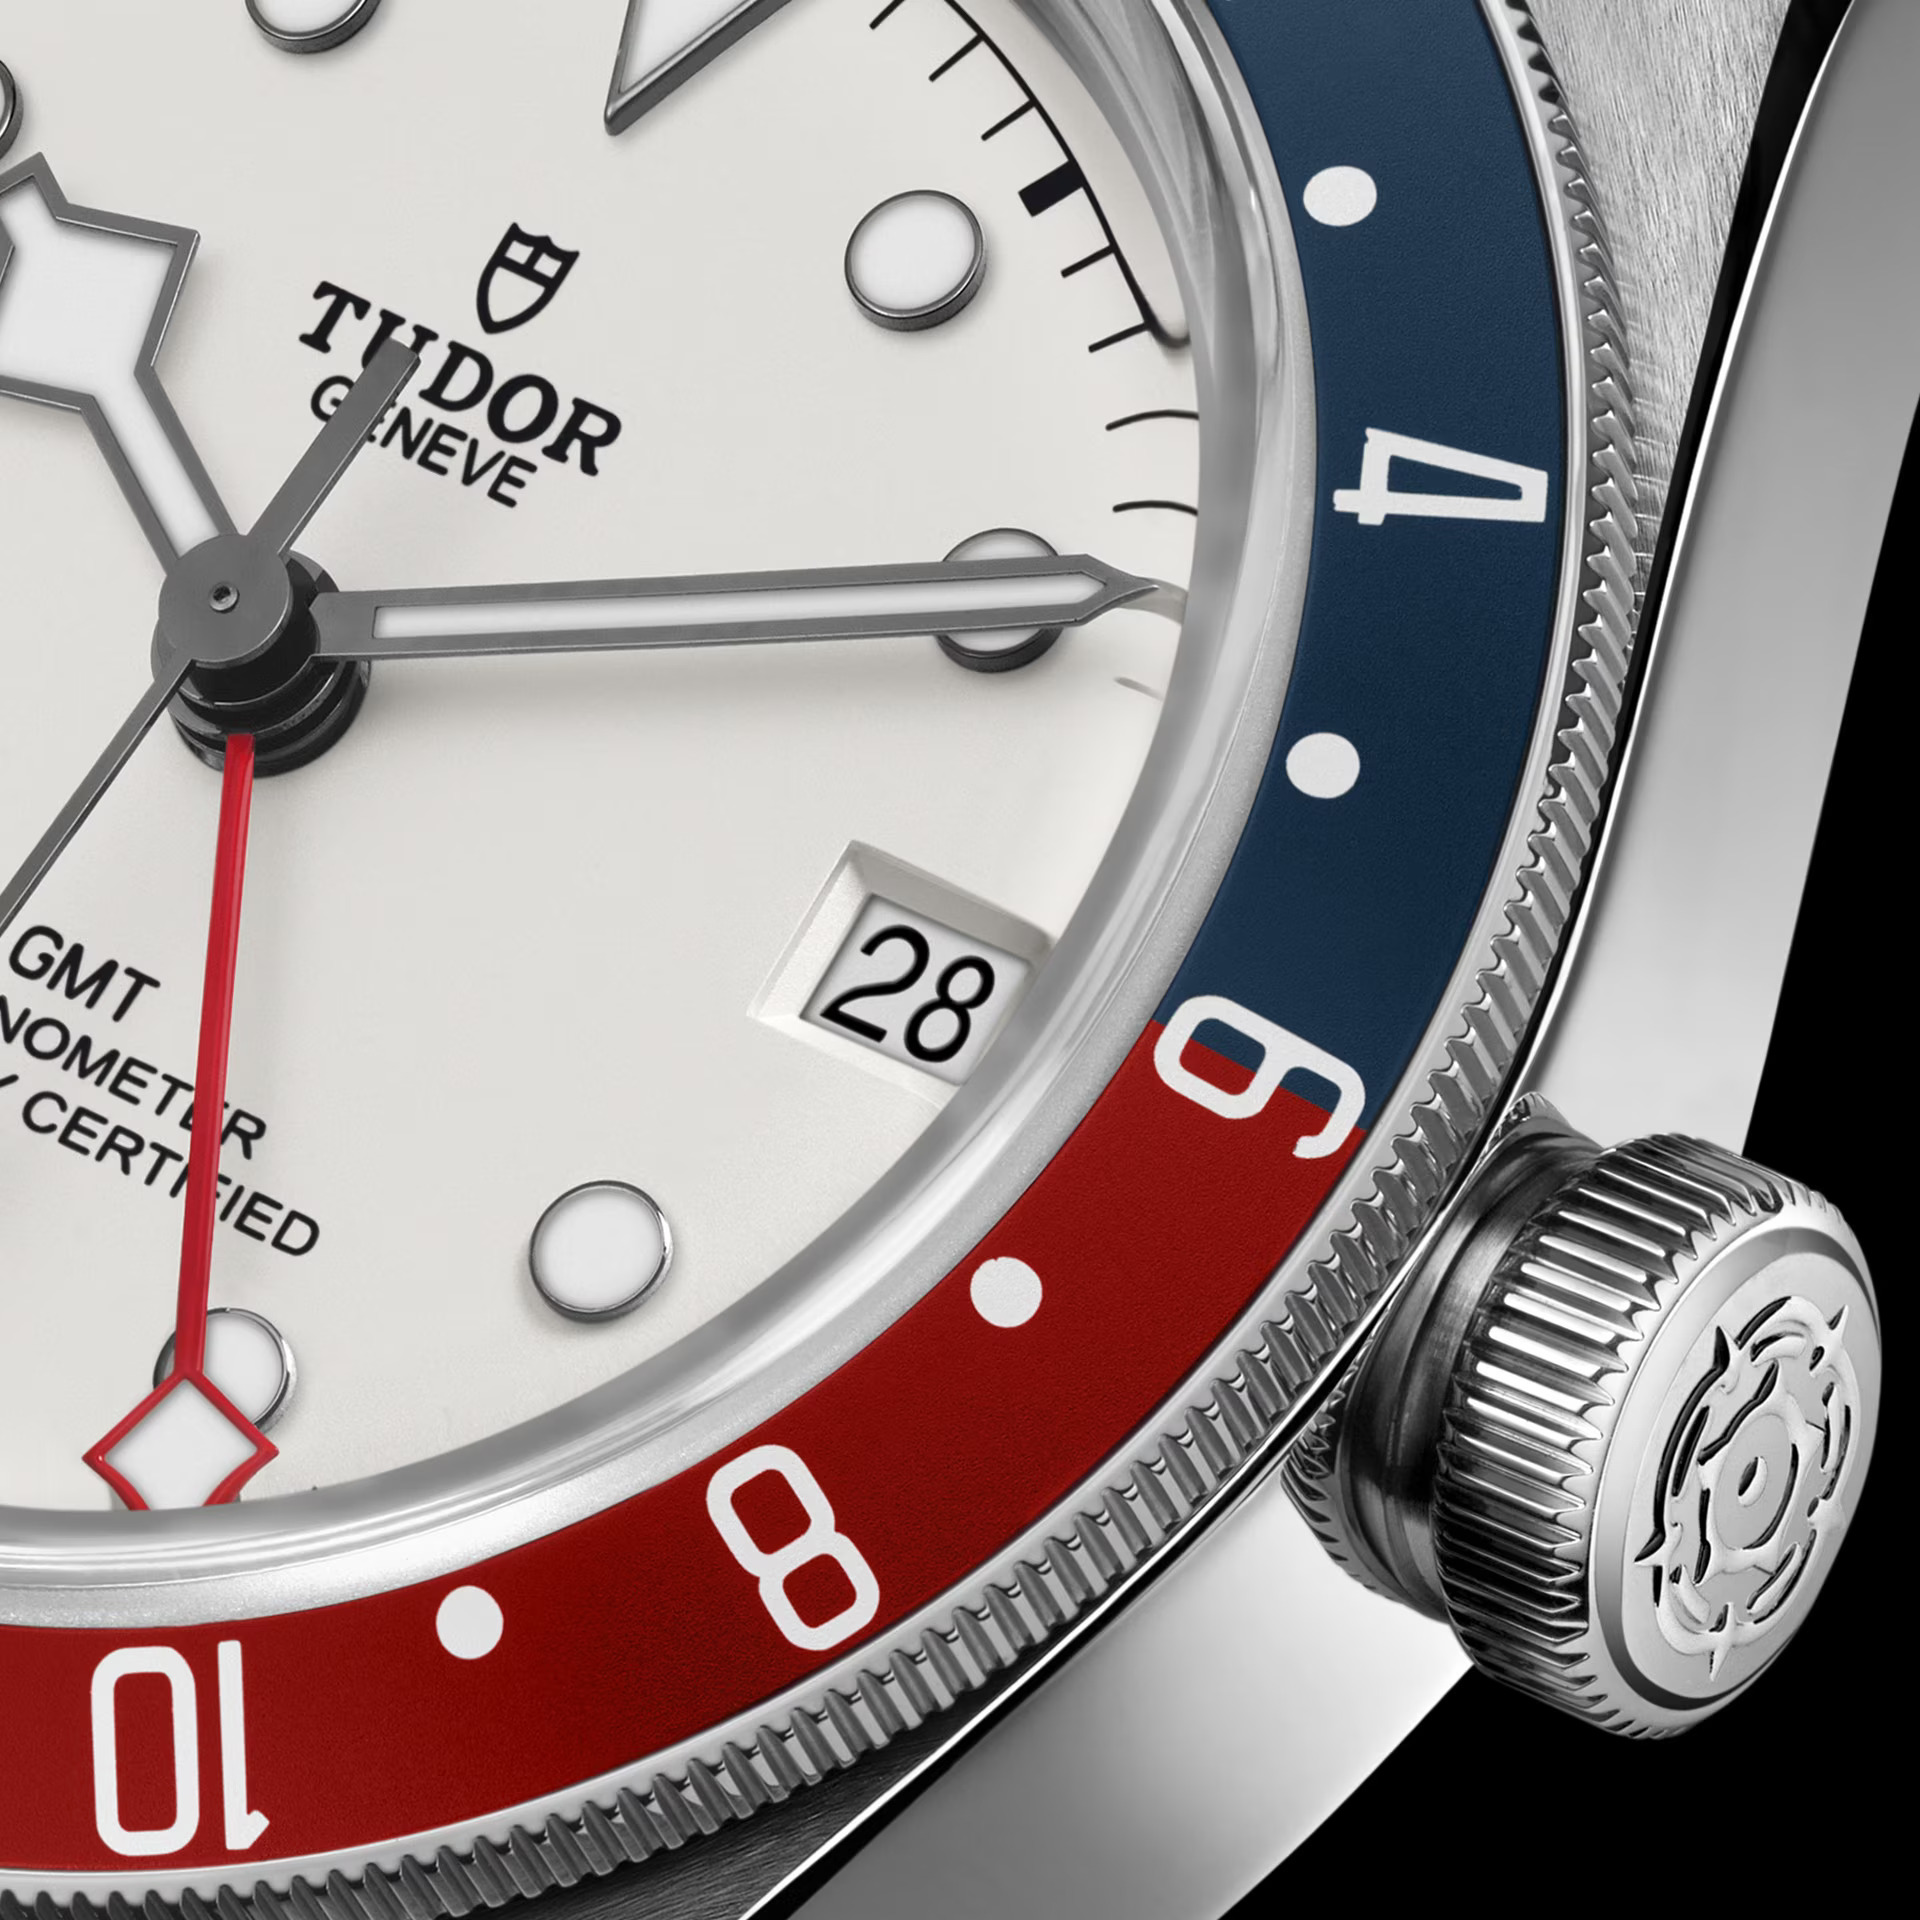 Tudor Black Bay GMT Opaline M79830RB-0010 Detalle